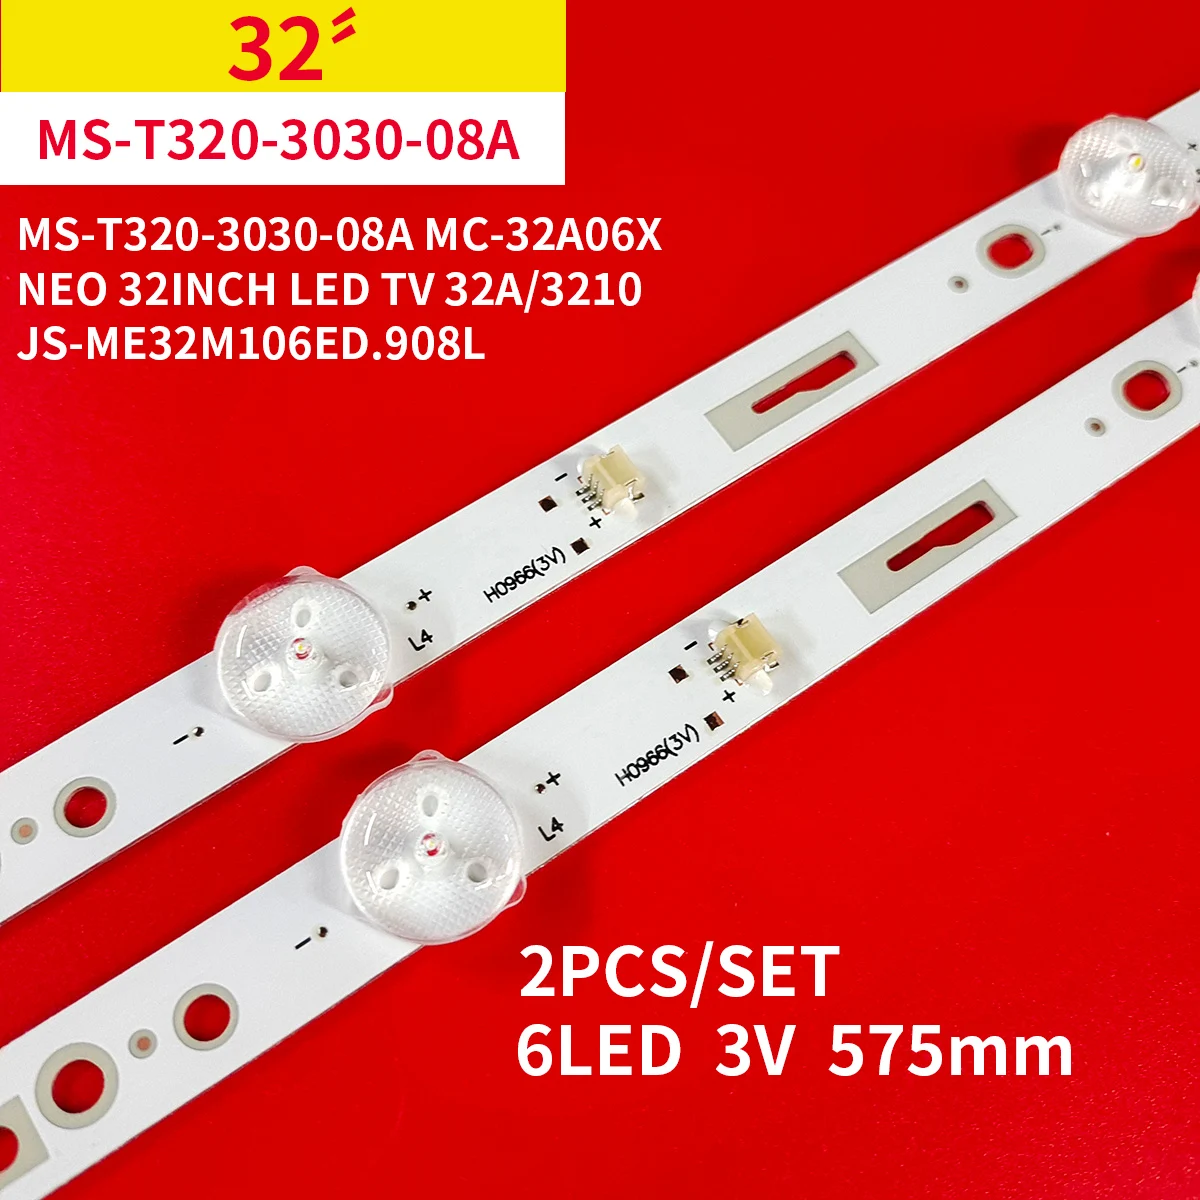 10Pcs Led Backlight strips for NEO 32INCH LED TV 32A/3210 JS-ME32M106ED.908L 6LED 3V MS-T320-3030-08A MC-32A06X